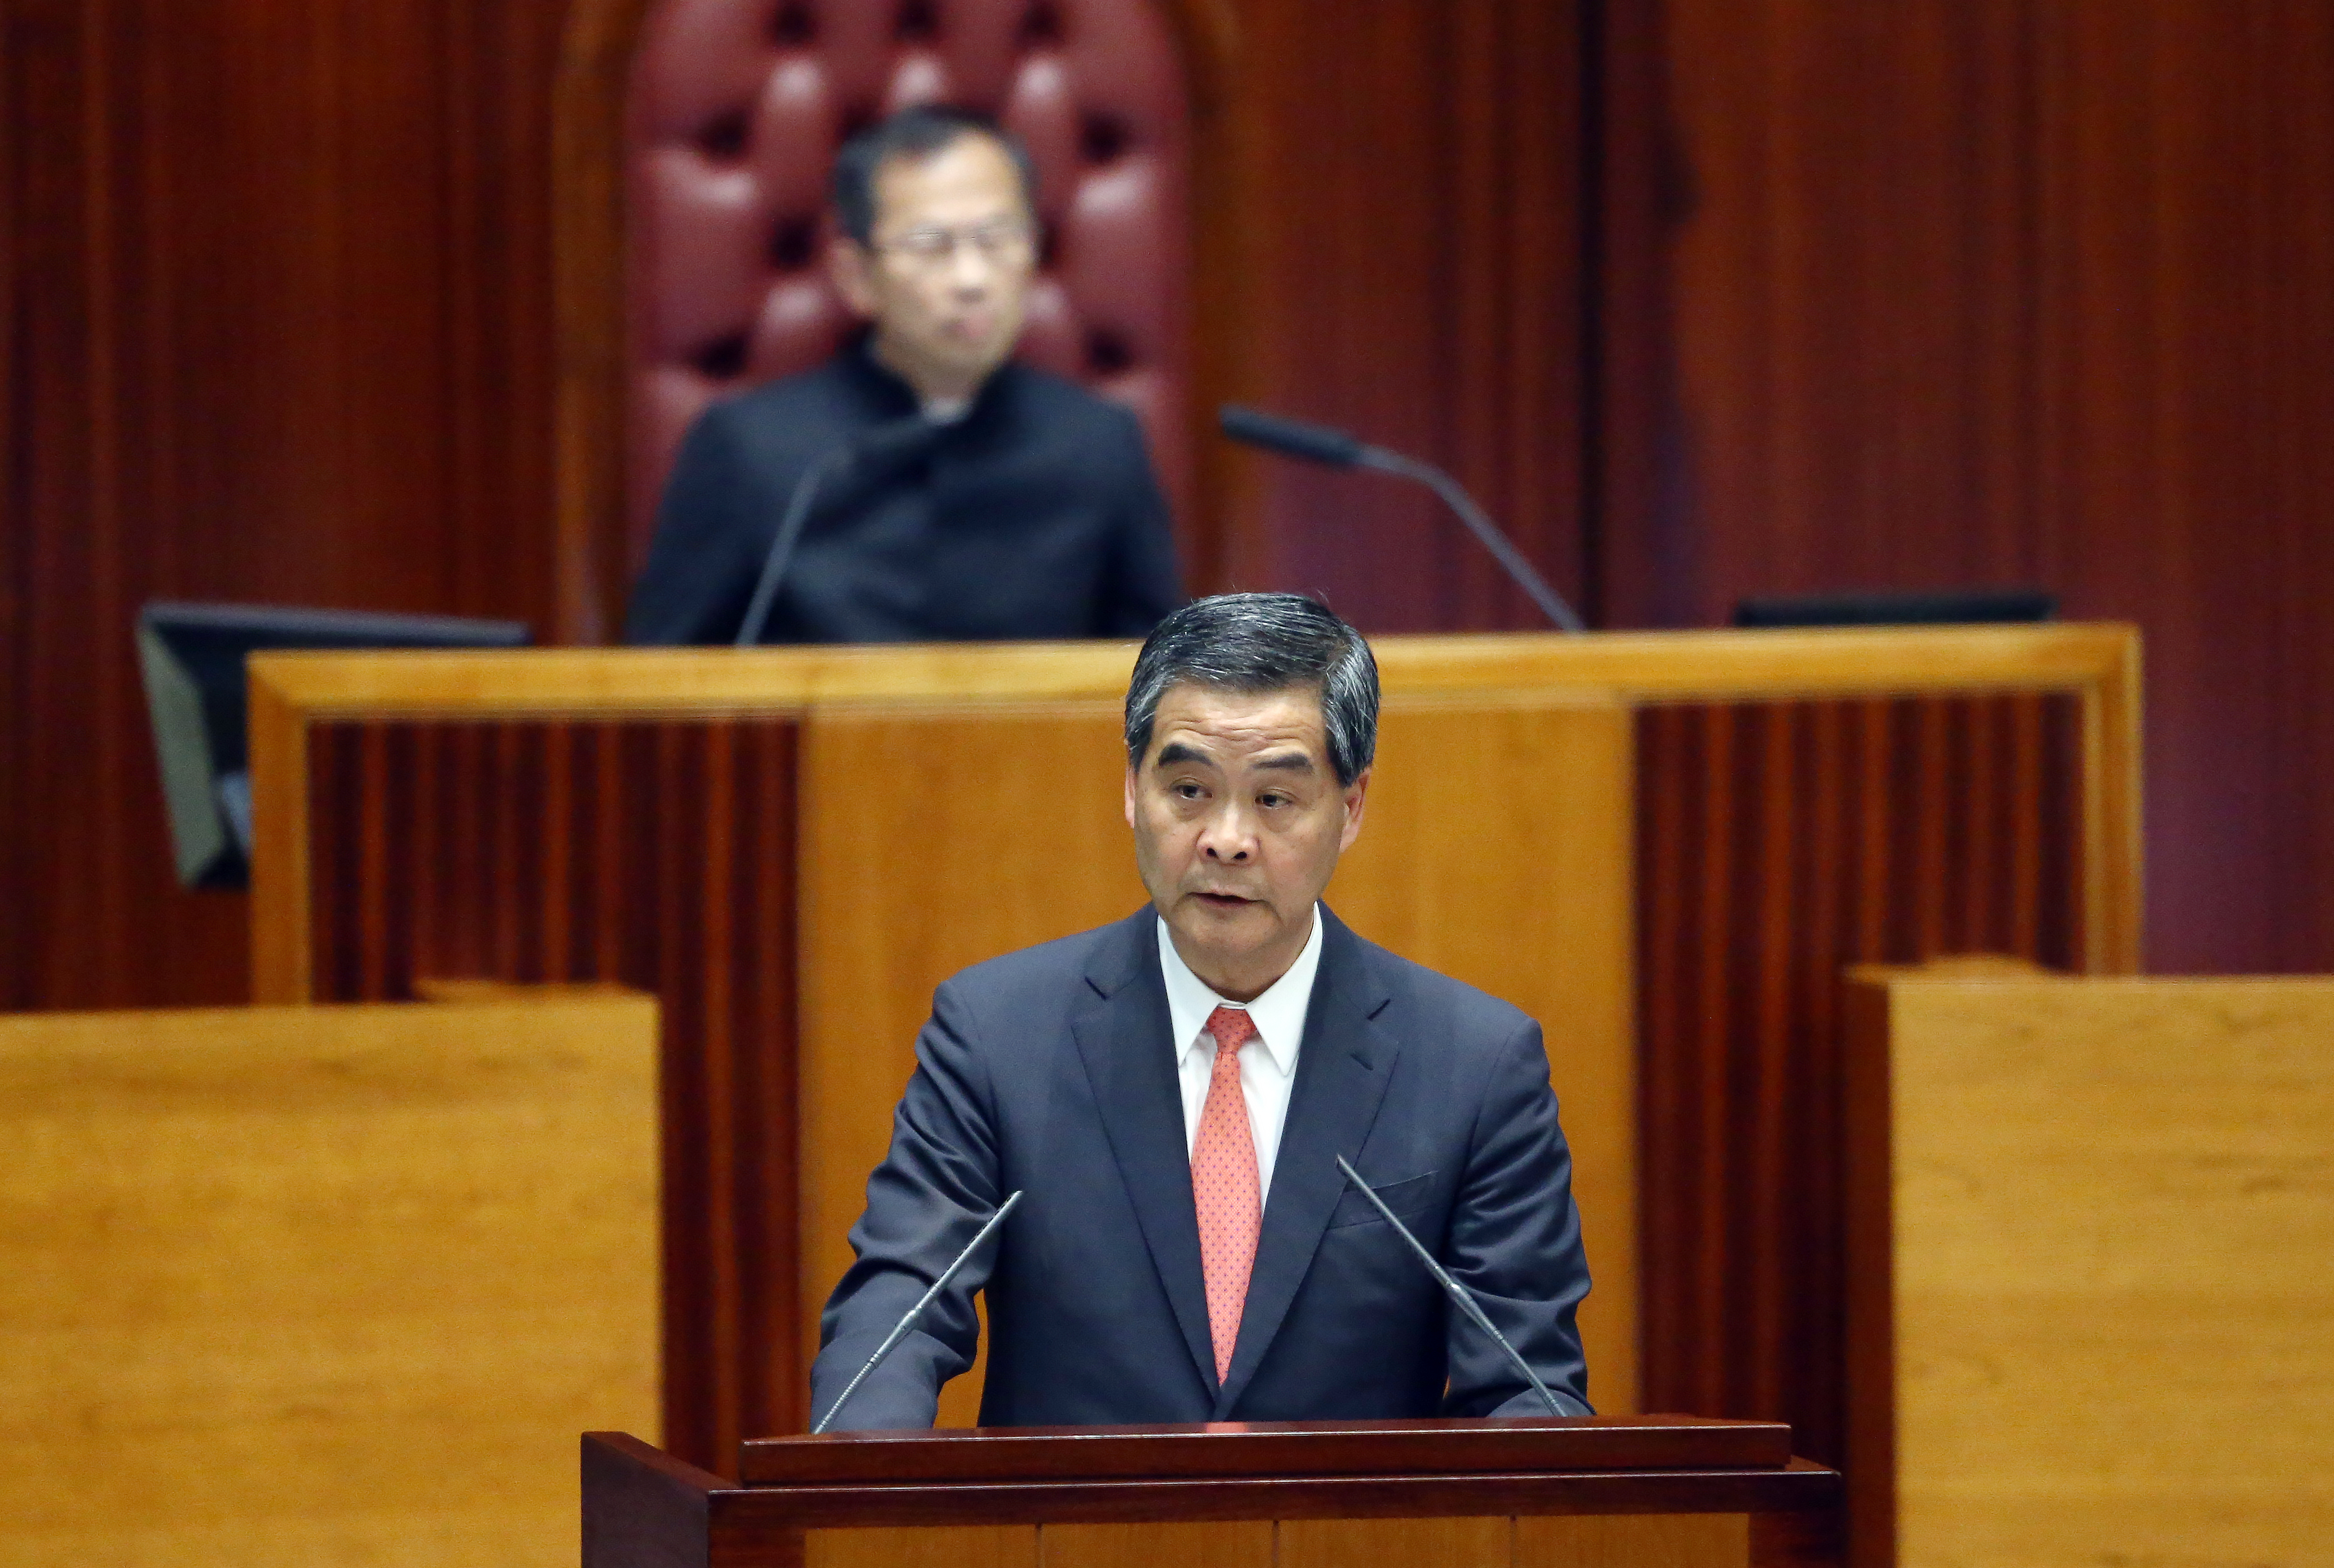 Hong Kong Chief Executive Leung Chun-ying announces his policy address at the Legco Chamber in Tamar. 13JAN16 SCMP/ Sam Tsang